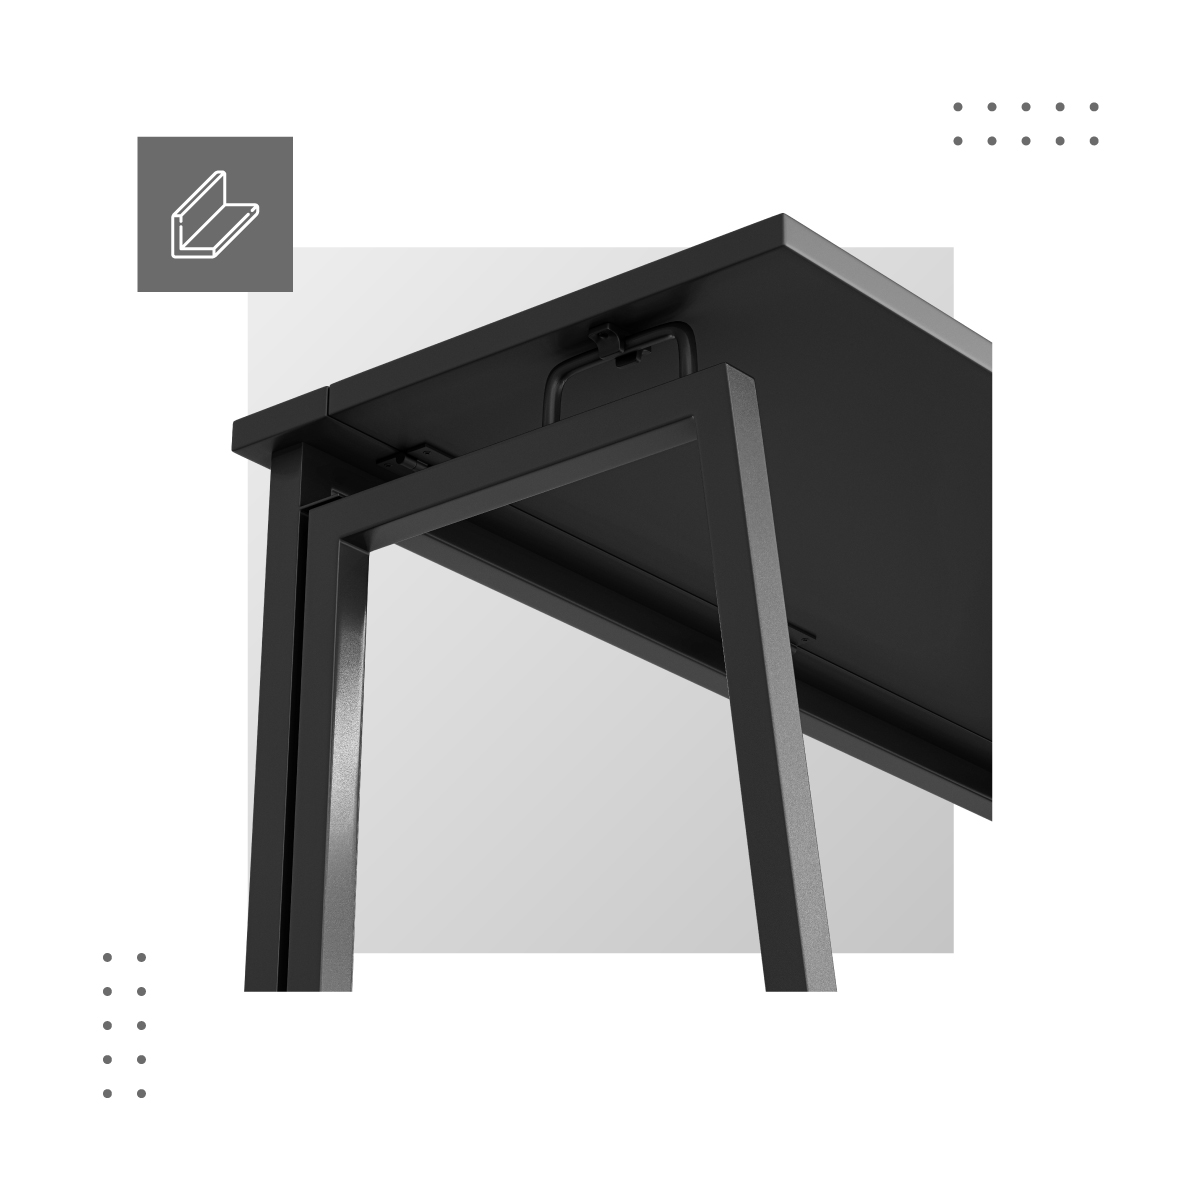 Wzmocniona konstrukcja składane biurko Leader 1.5